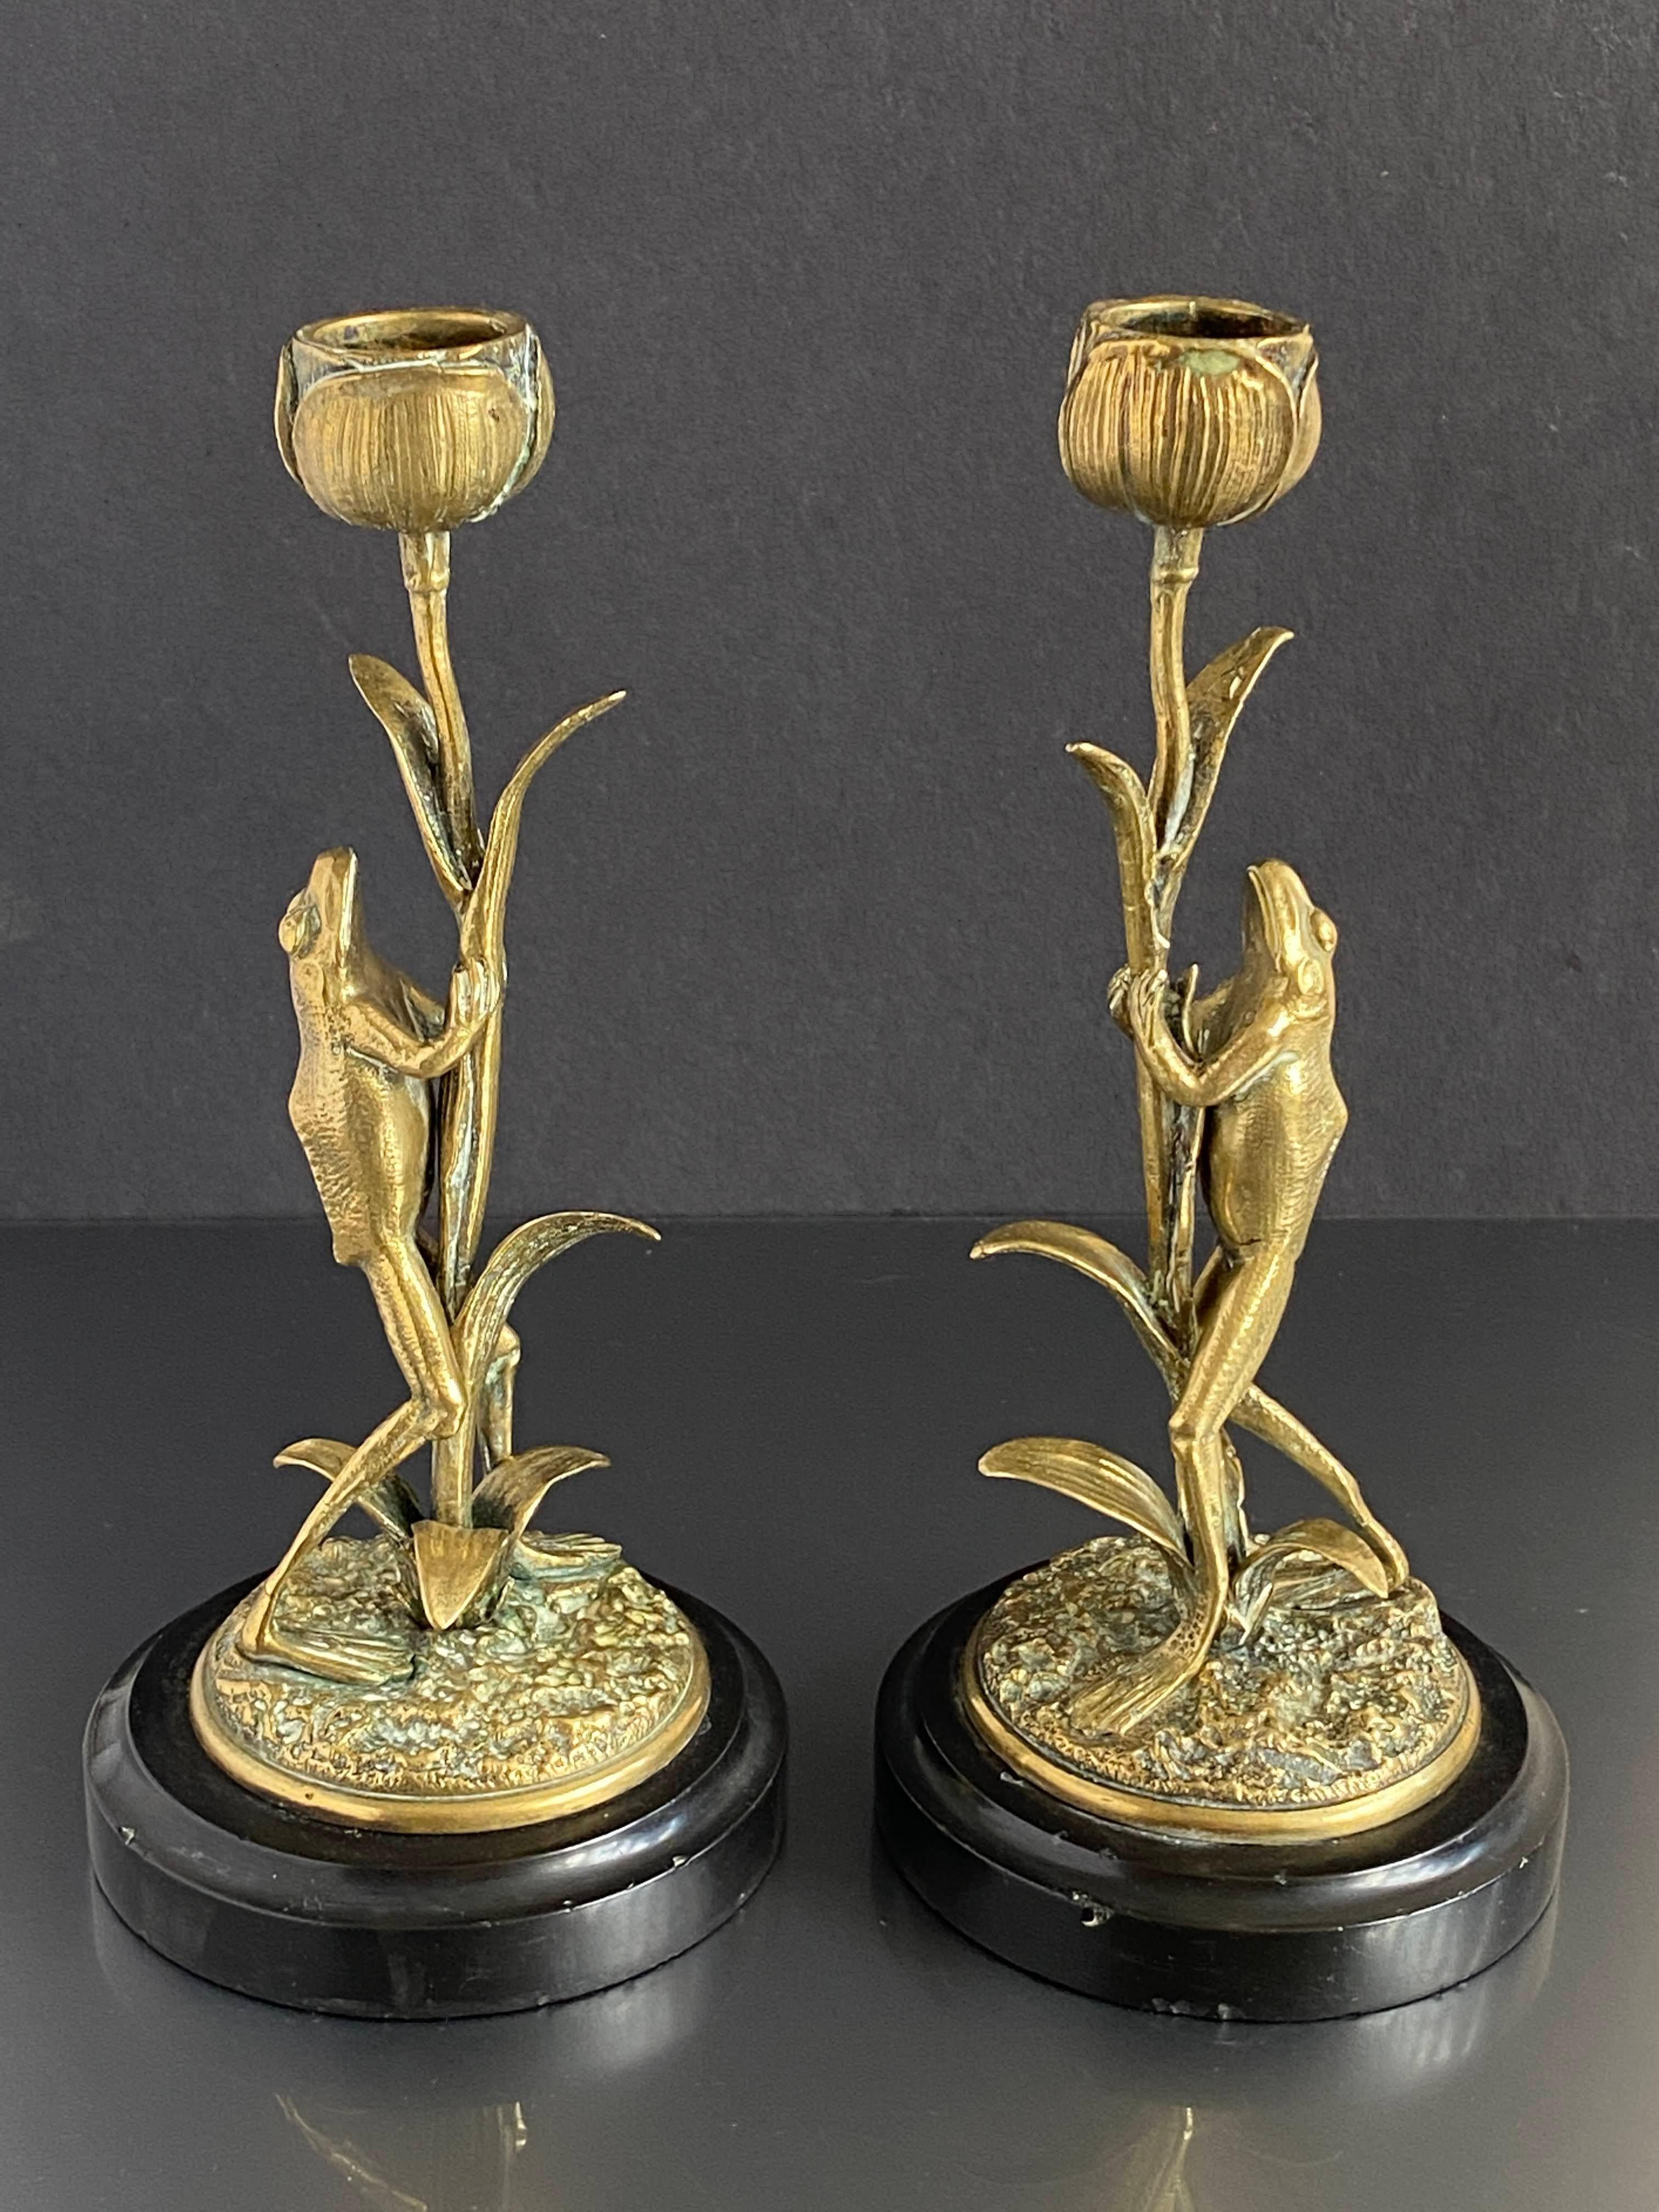 Ein ungewöhnliches Paar Jugendstil-Kerzenhalter, modelliert als Frösche, die auf Lotusblumen klettern, auf einem schwarzen, runden Marmorsockel. In gutem Zustand mit altersgemäßen Gebrauchsspuren, um 1890, Herkunft unbekannt.